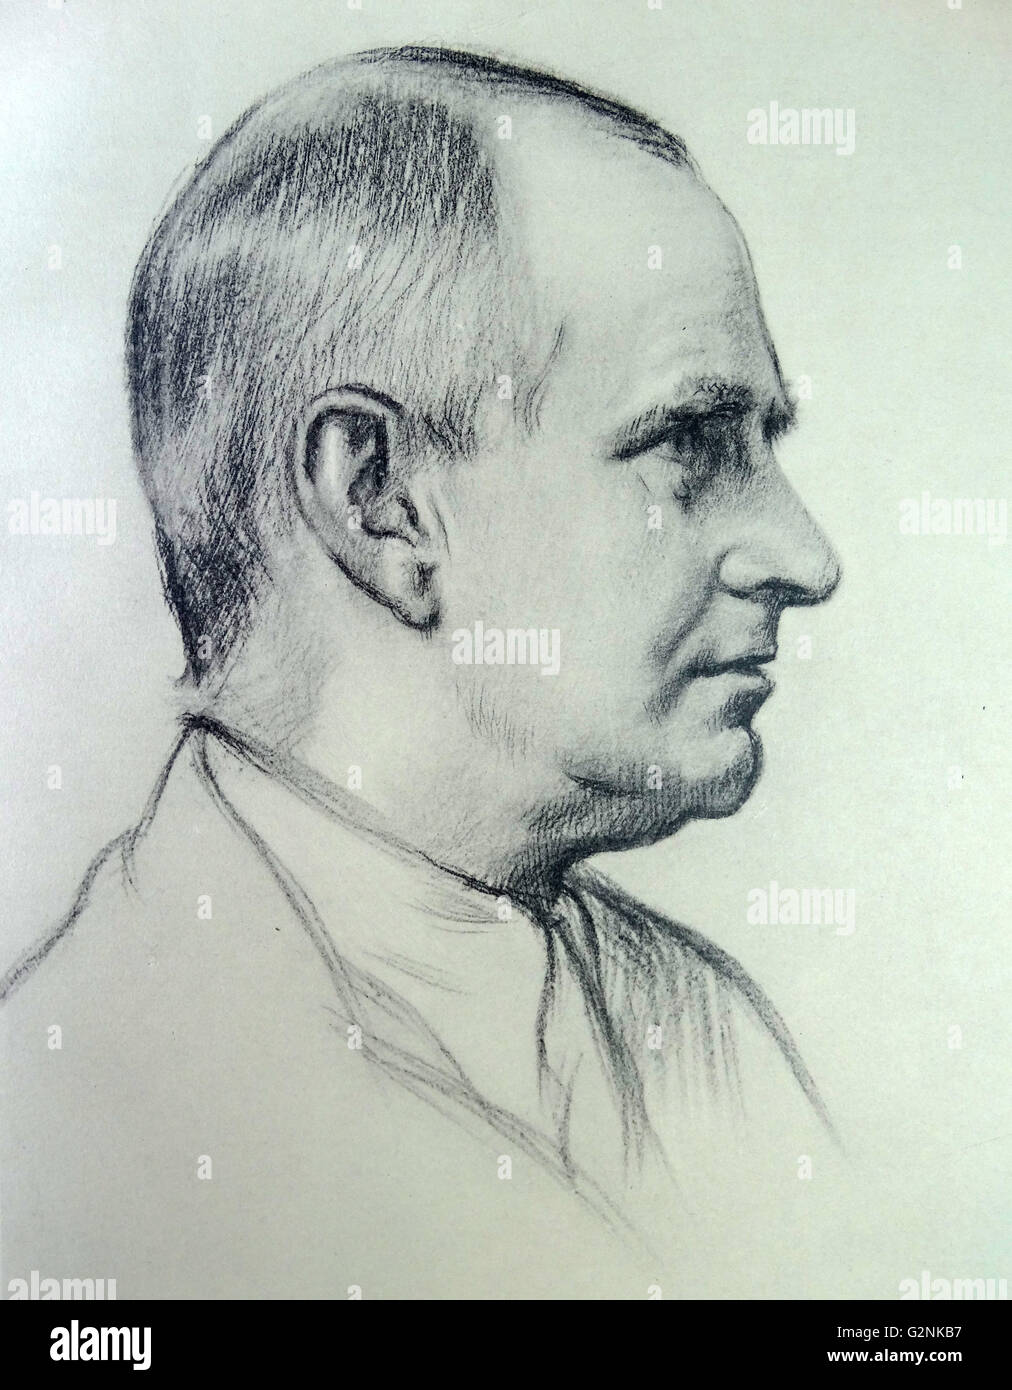 Portrait du professeur A.S. Eddington par Sir William Rothenstein. Rothenstein (1872-1945) était un peintre, graveur et dessinateur. Banque D'Images